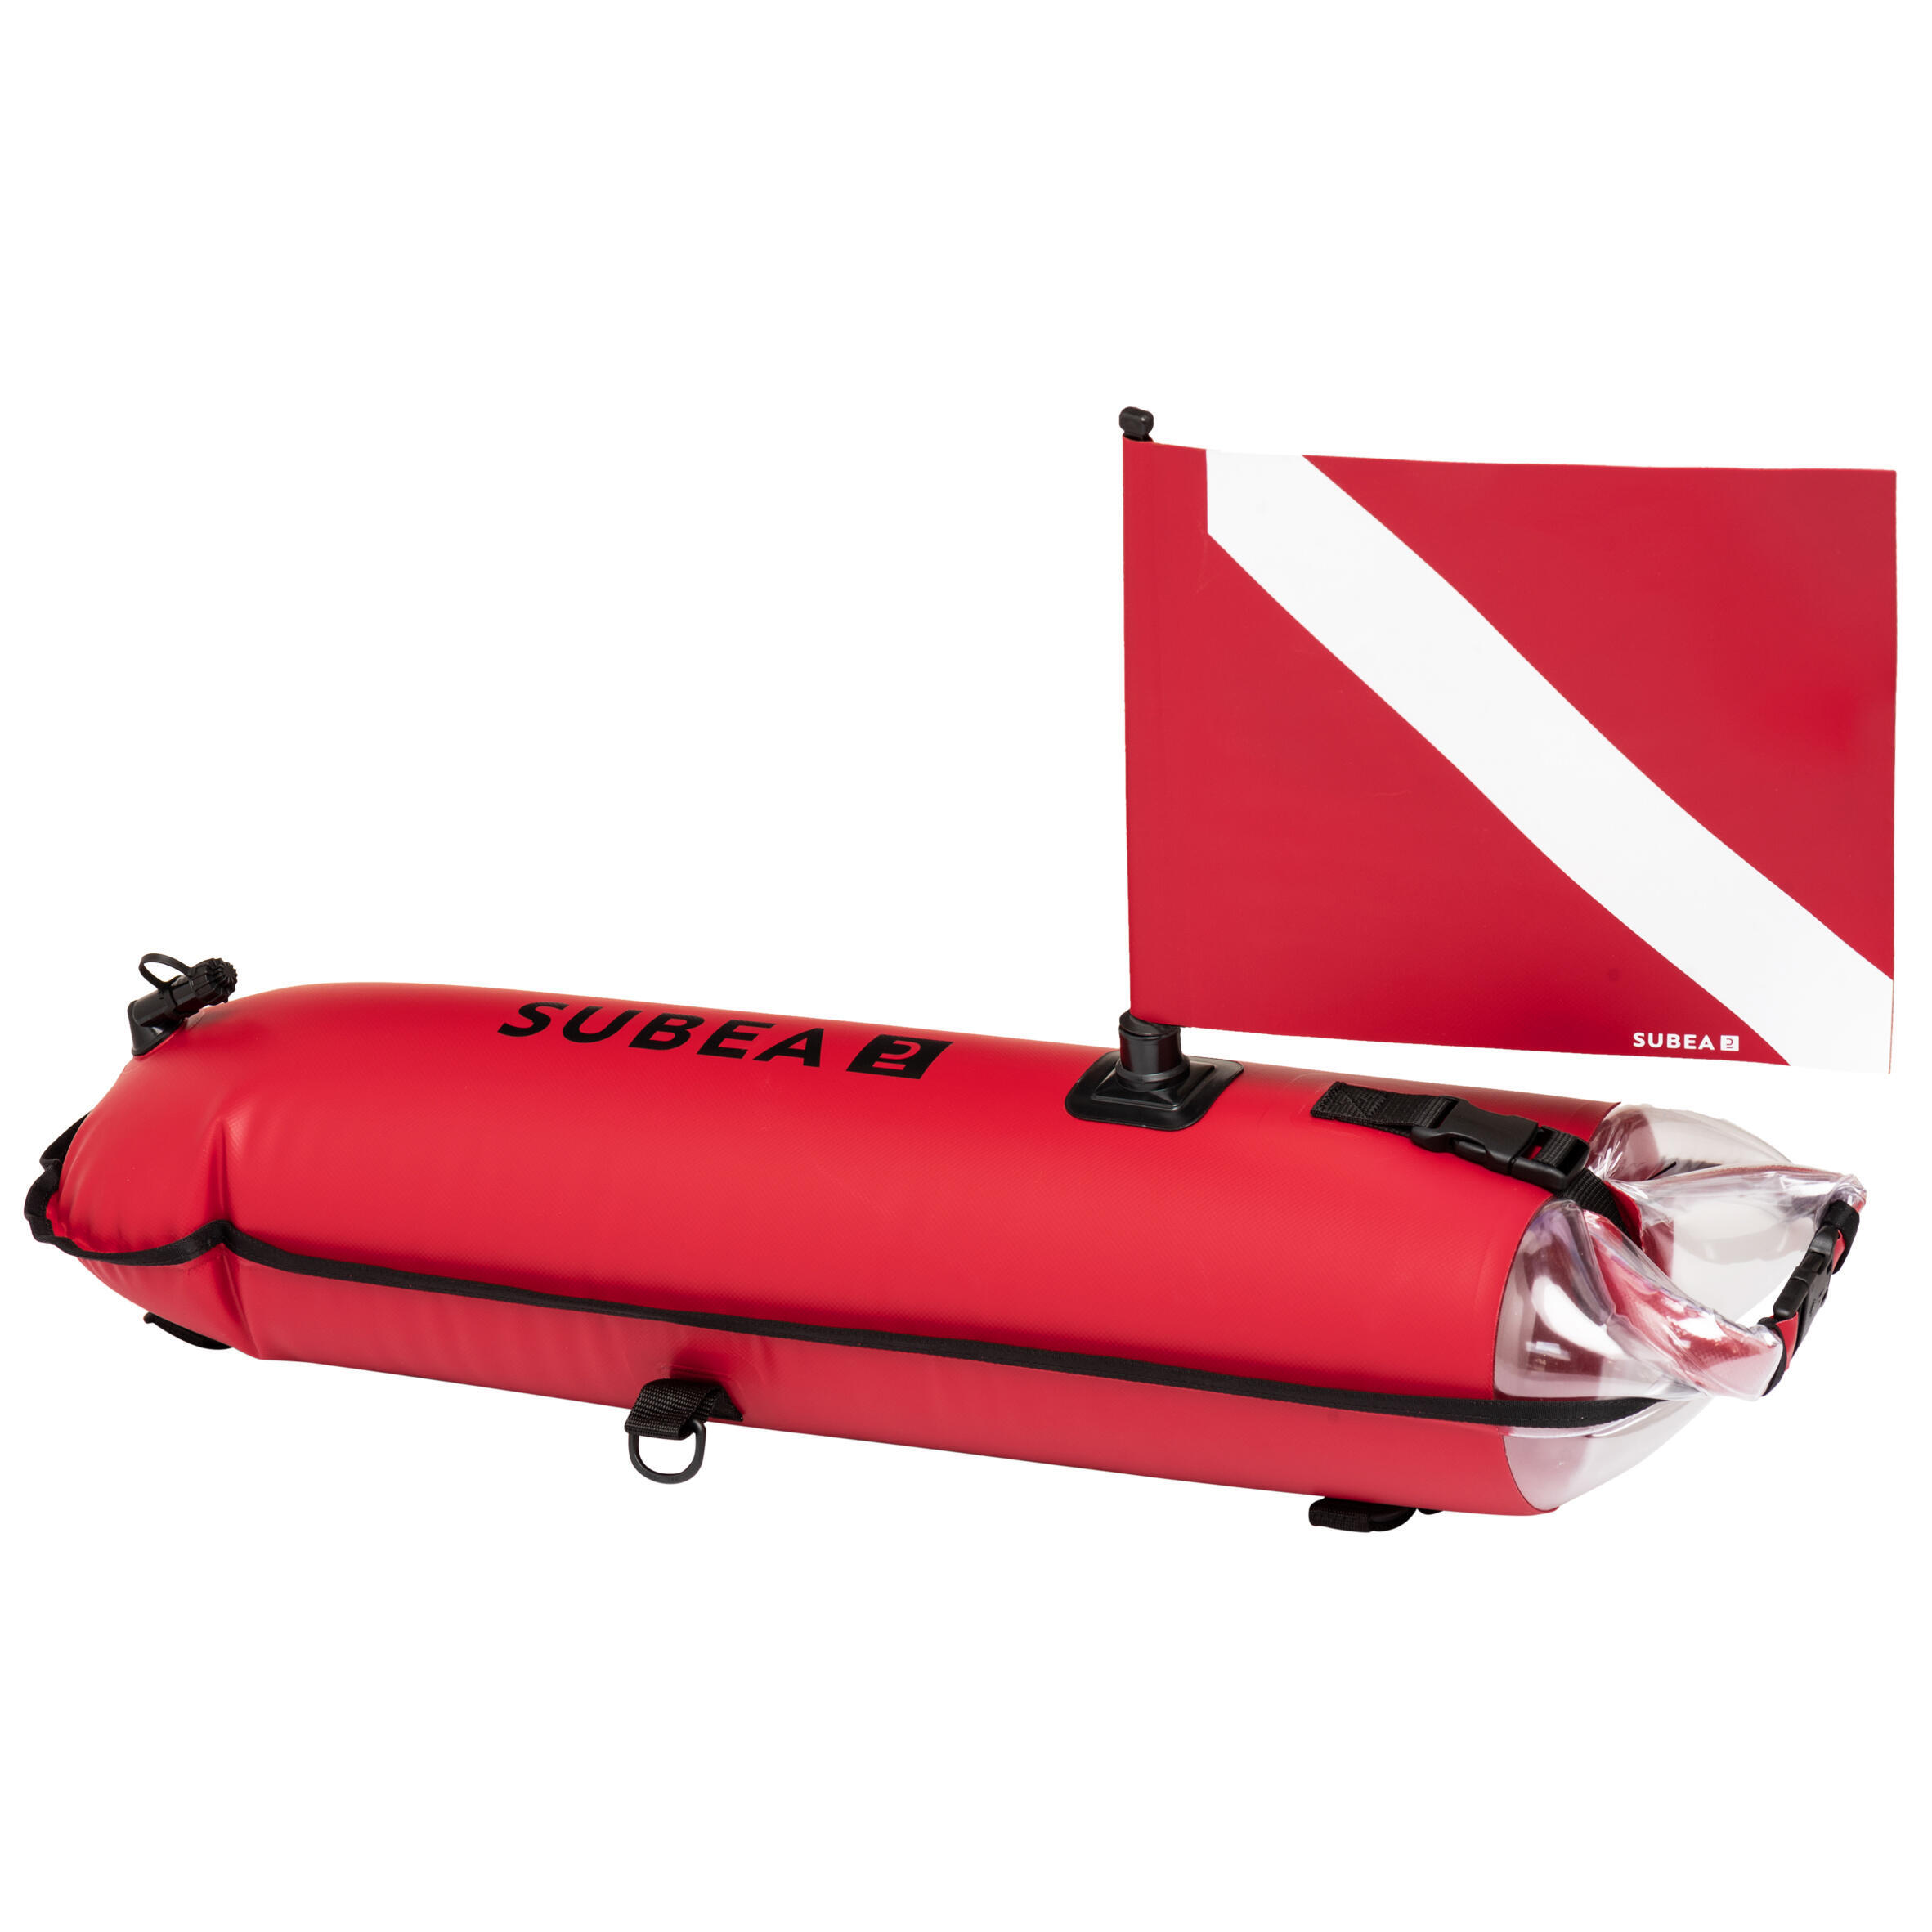 Сигнальный буй SPF 500 водонепроницаемая сумка для фридайвинга SUBEA, кораллово-красный буй marlin torpedo